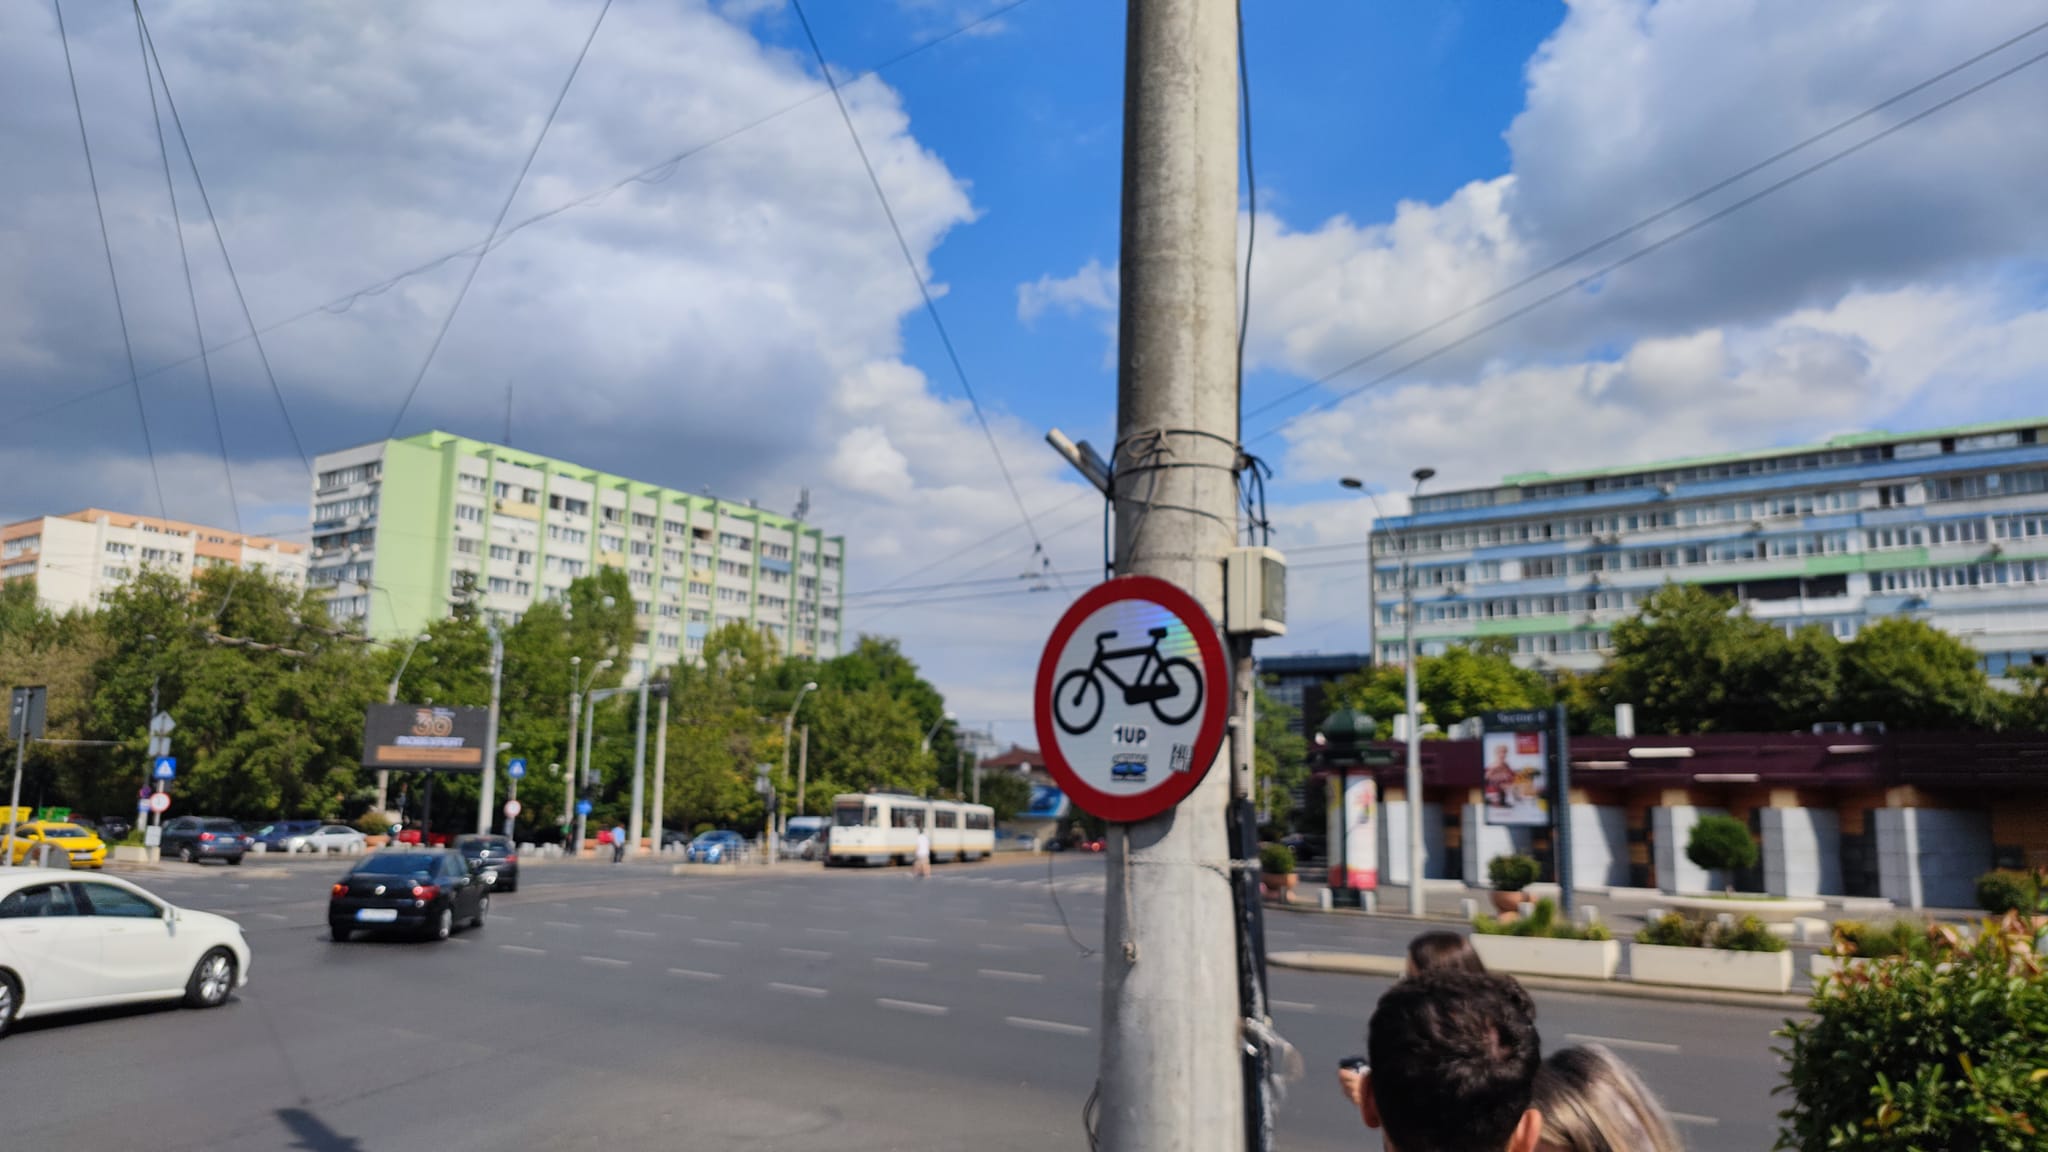 București, doar pentru mașini. Primăria vrea interzicerea trotinetelor. Bicicletele oricum nu au unde circula